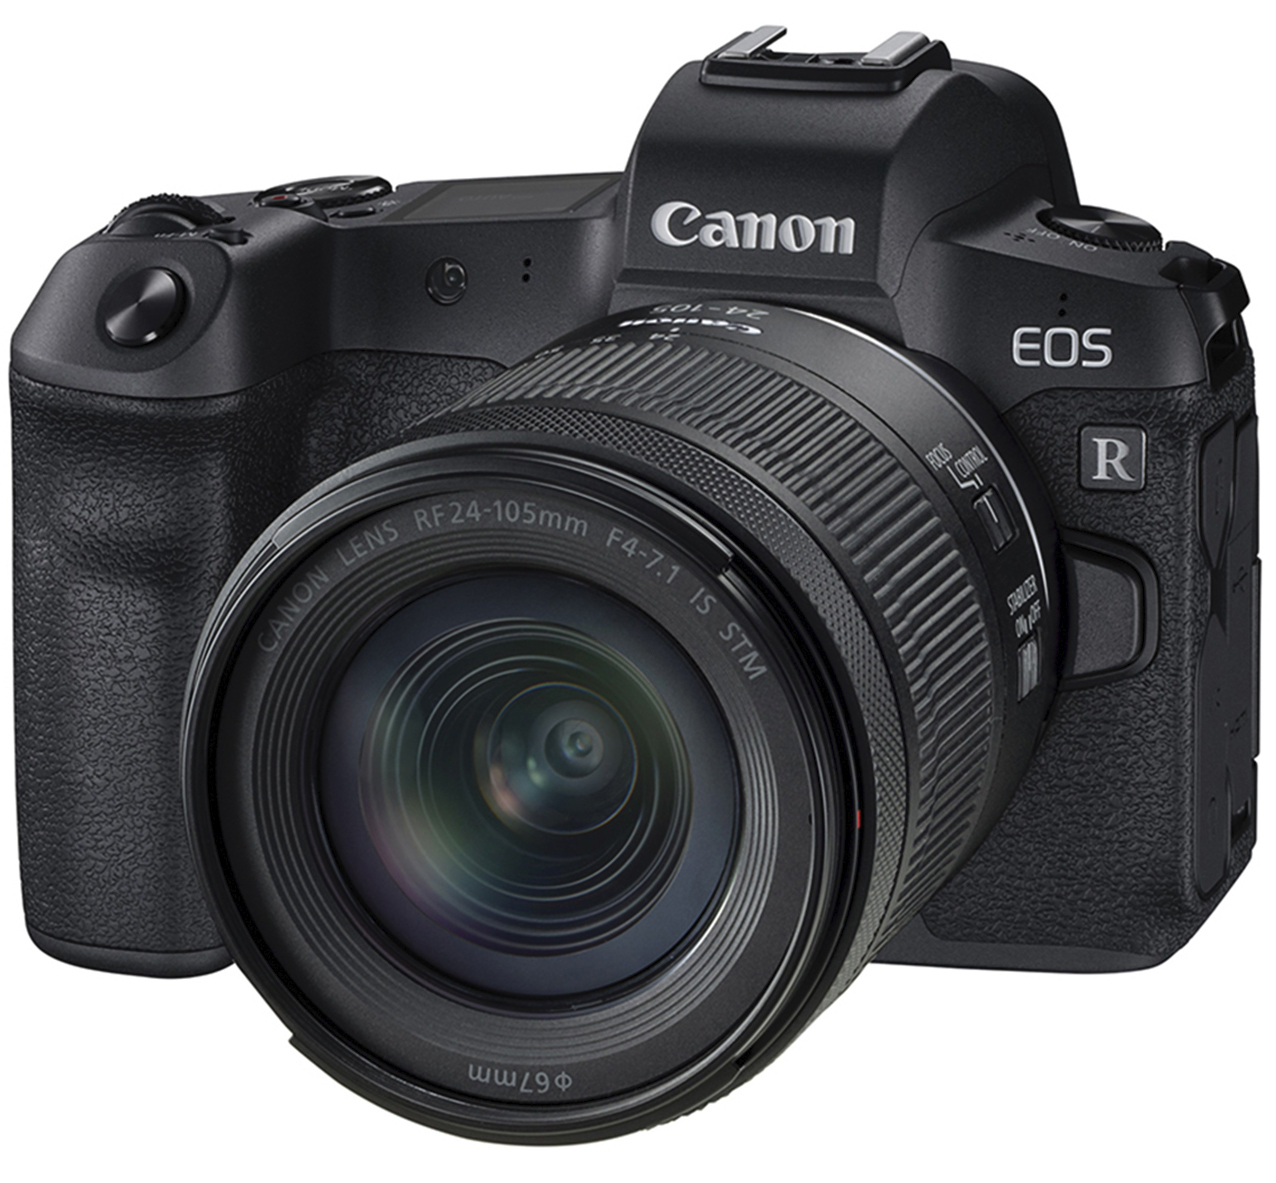 TVignette pour Canon EOS R + RF 24-105mm f/4-7.1 IS STM